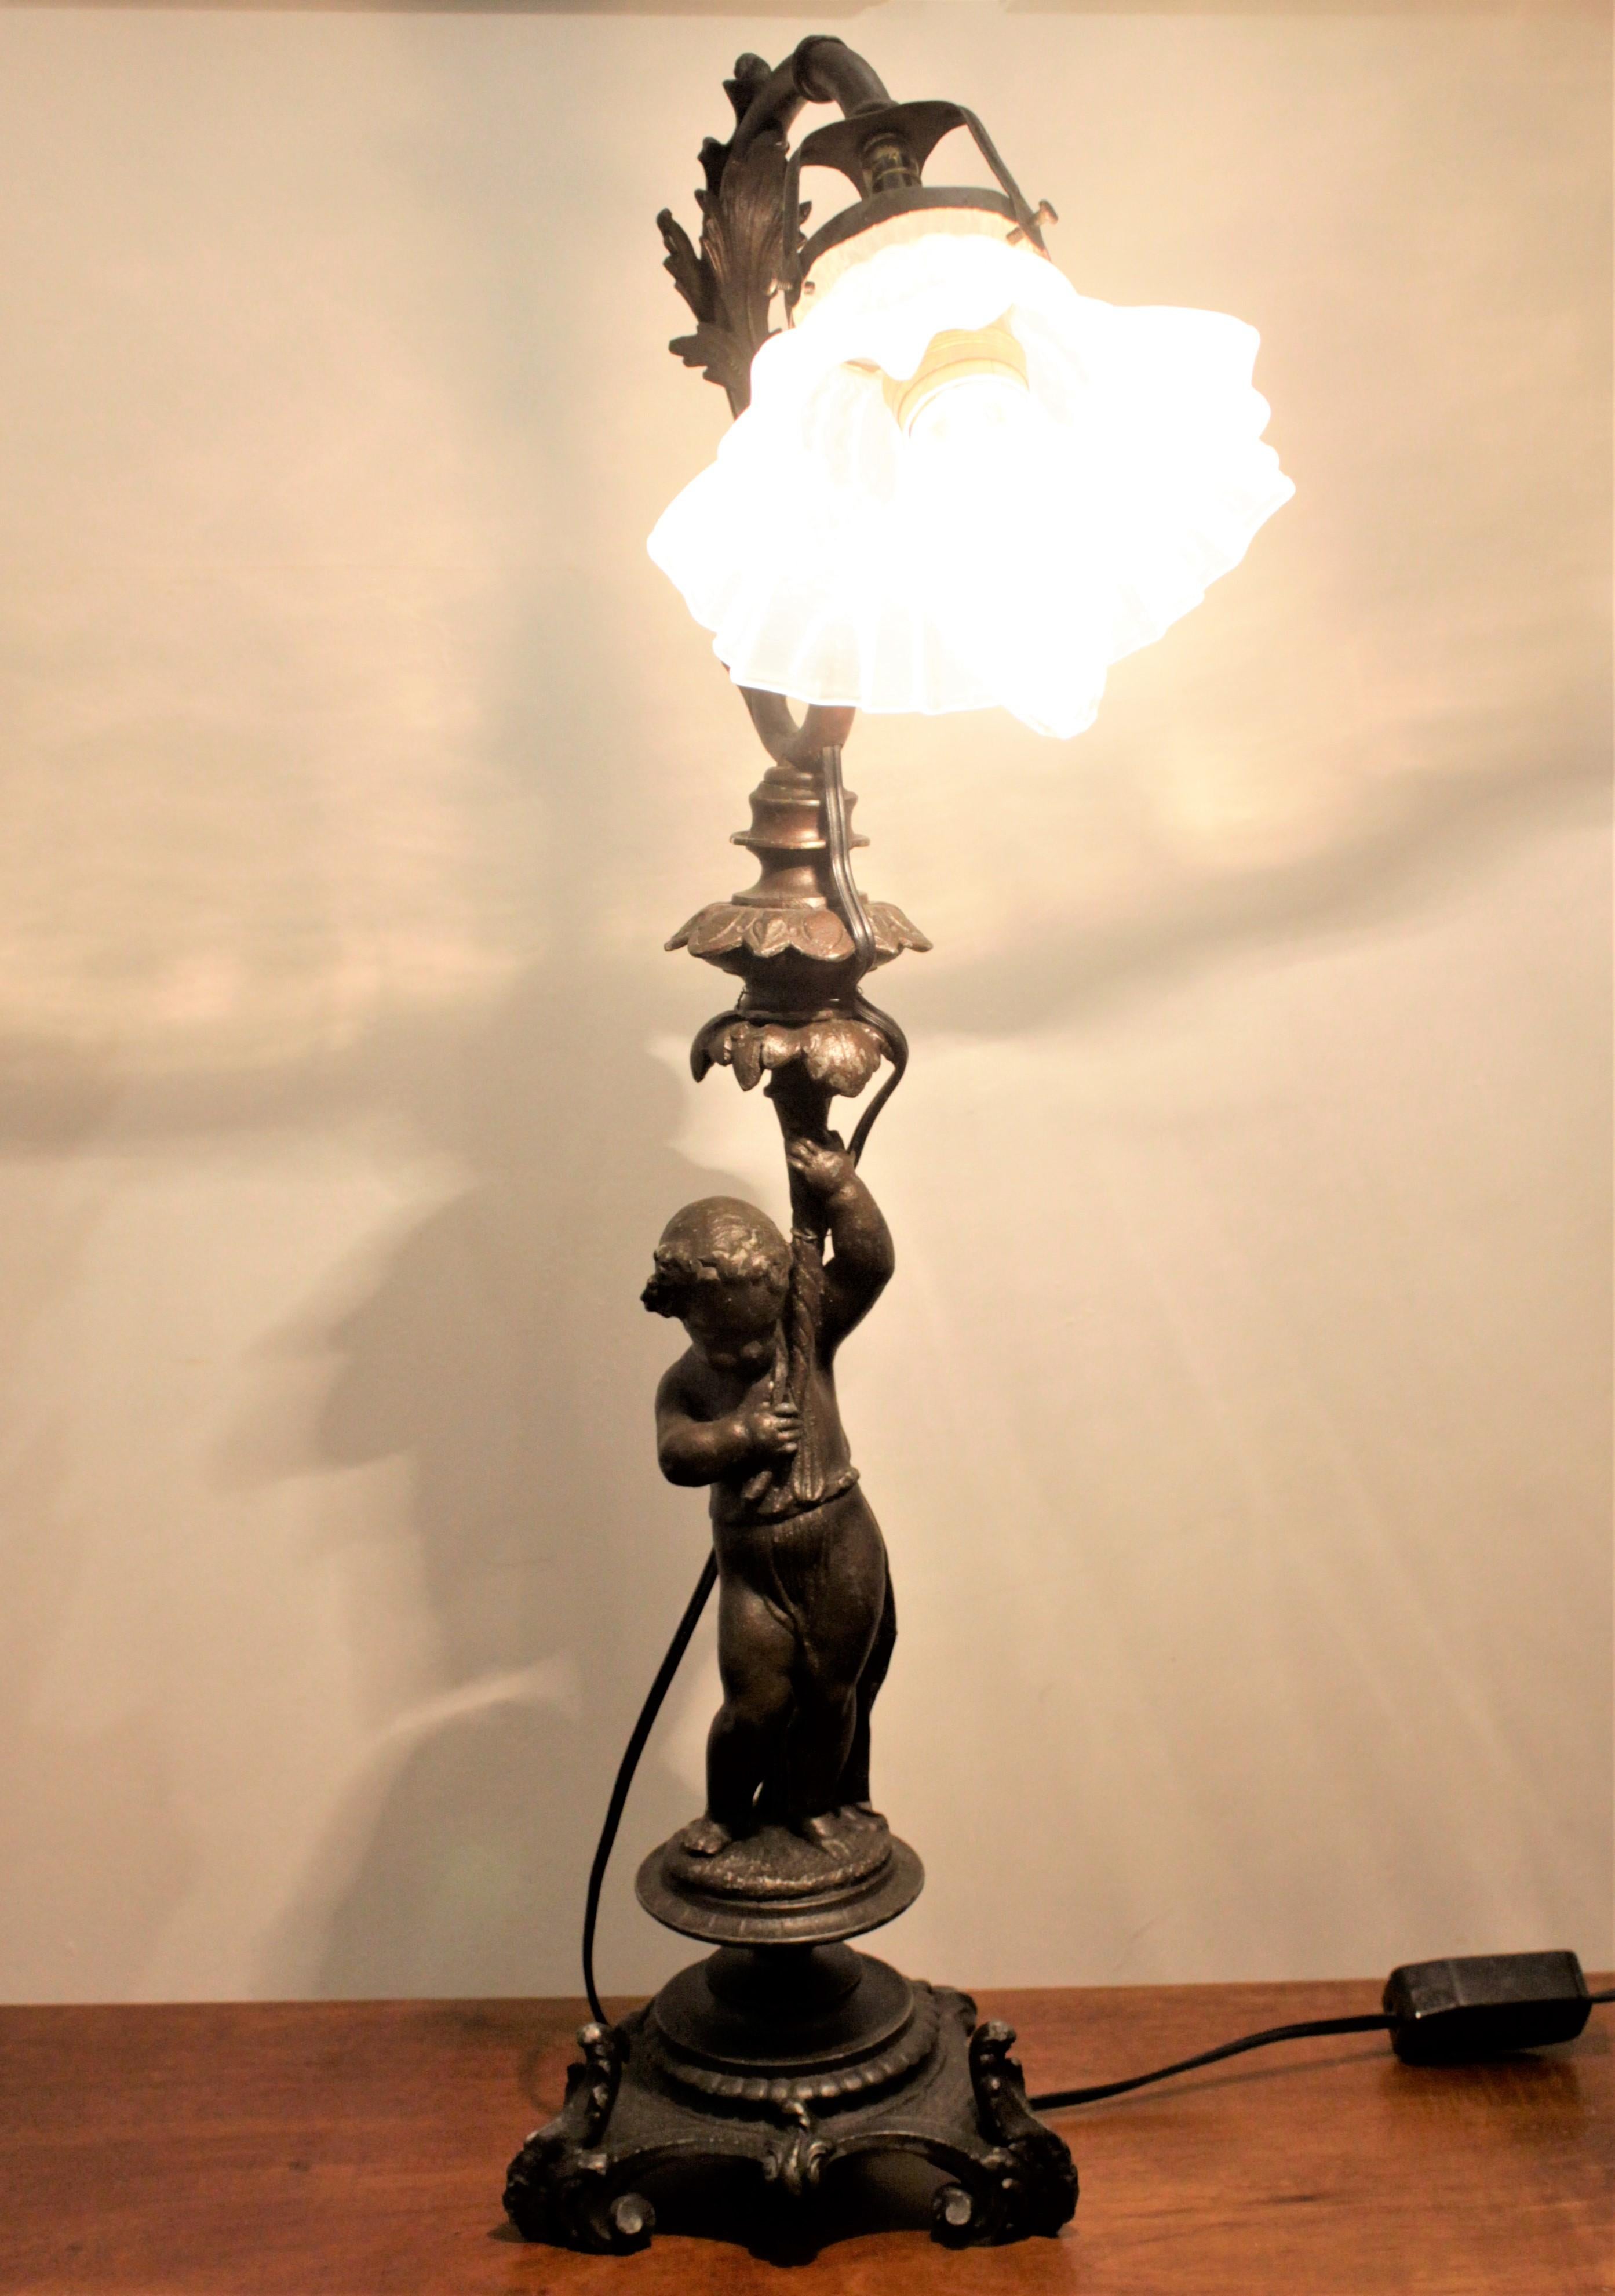 Diese antike, aus Gusseisen gegossene Cherub-Lampe hat keine Herstellermarken, stammt aber vermutlich aus dem Italien des späten 19. Jahrhunderts und ist im viktorianischen Stil gehalten. Die Lampe zeigt einen kunstvoll gegossenen Cherub, der auf